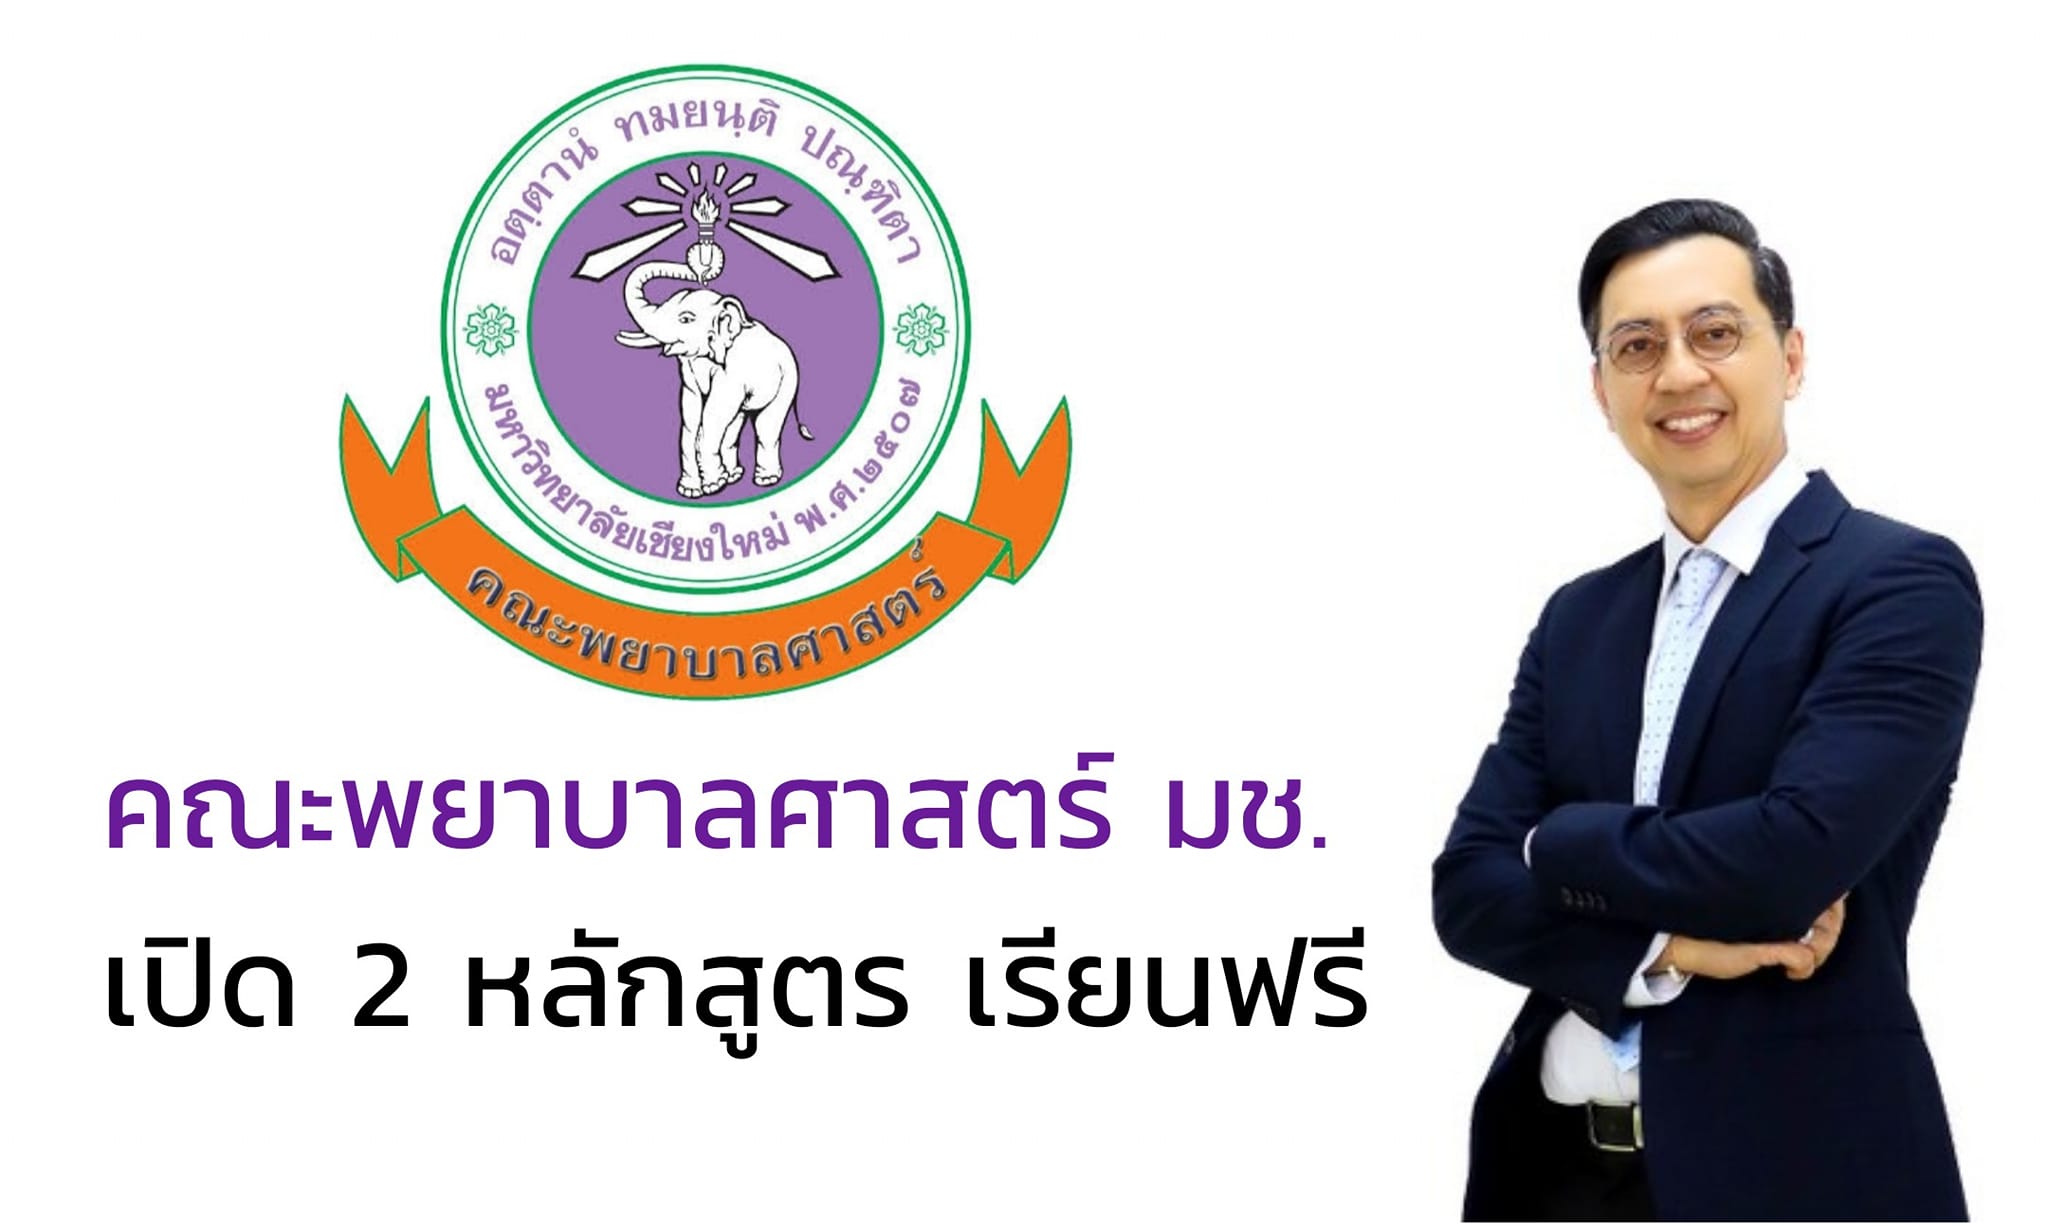 
	เปิด 2 หลักสูตร เรียนฟรี !! แบบ Non-Degree "สร้างคน สร้างงาน ยกระดับมาตรฐานการศึกษาไทย" 
